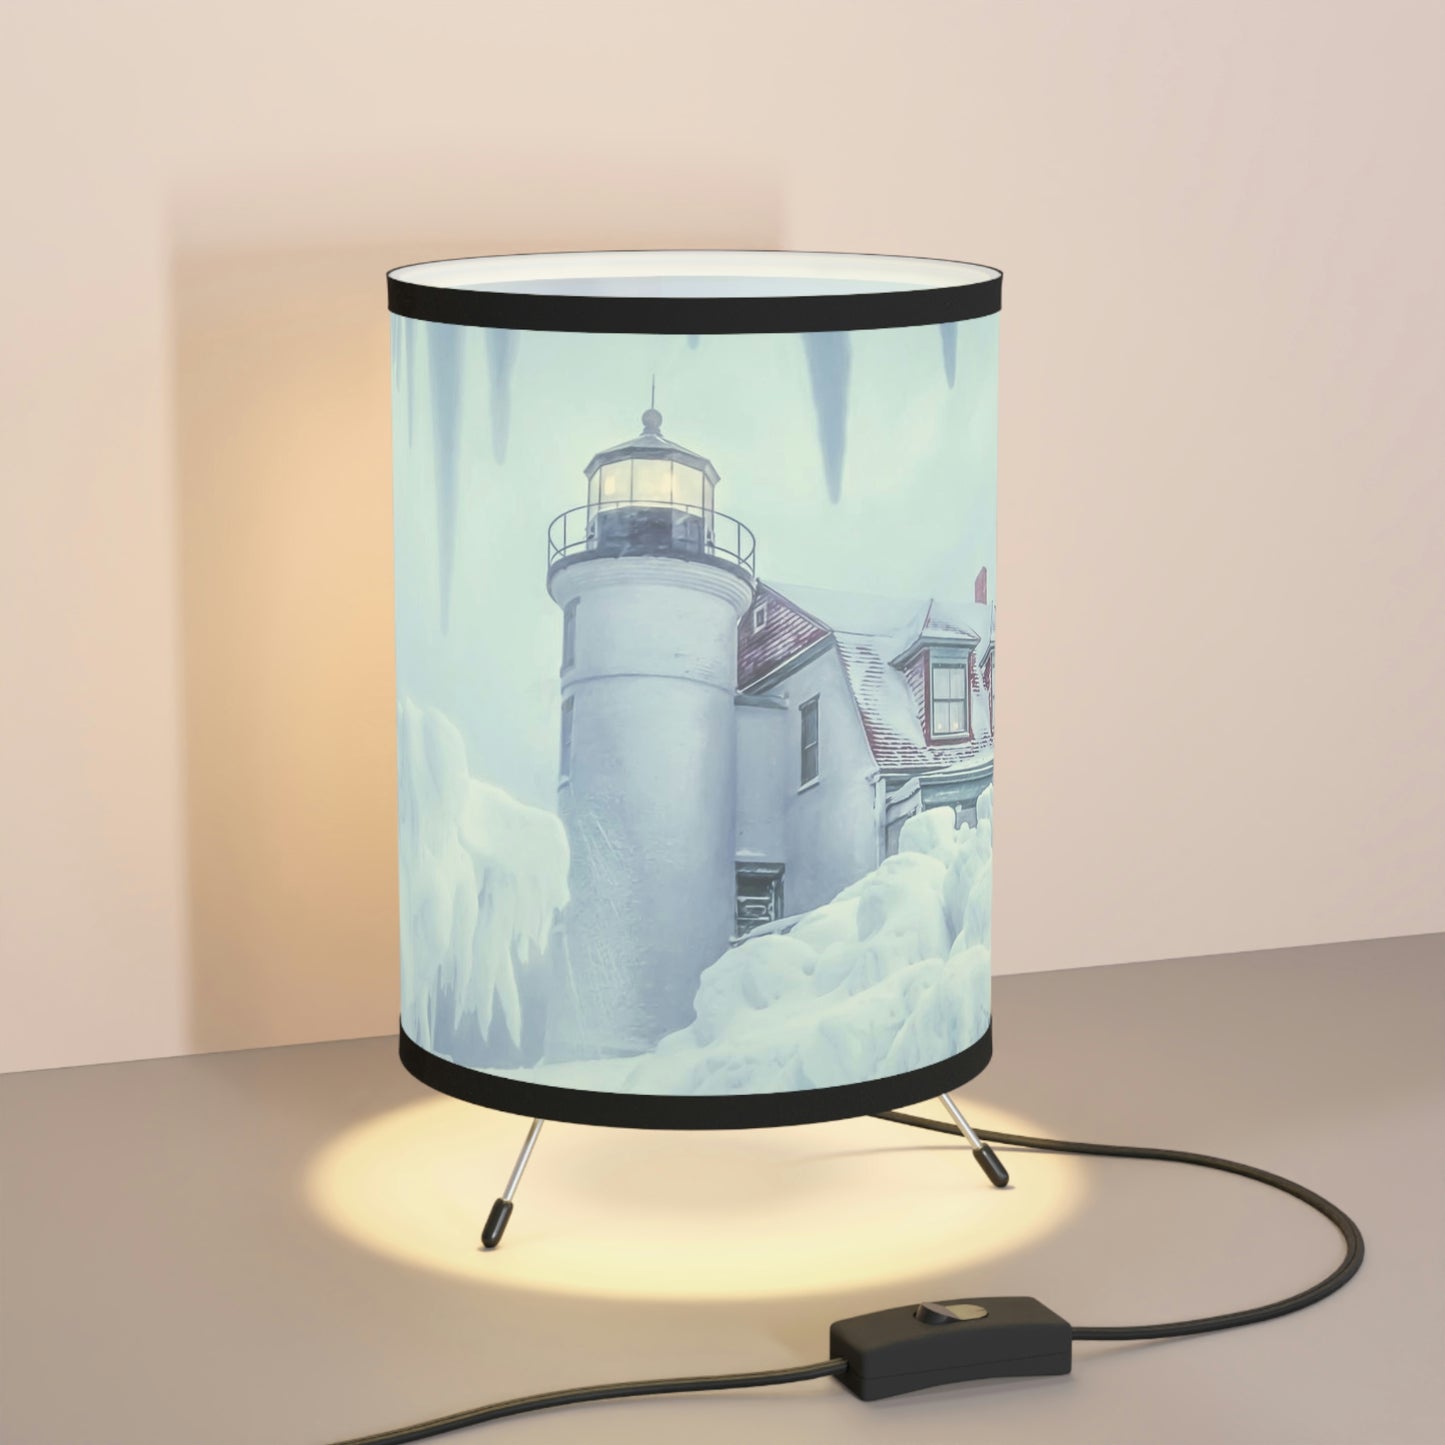 Frozen Betsie Tripod Art Lamp